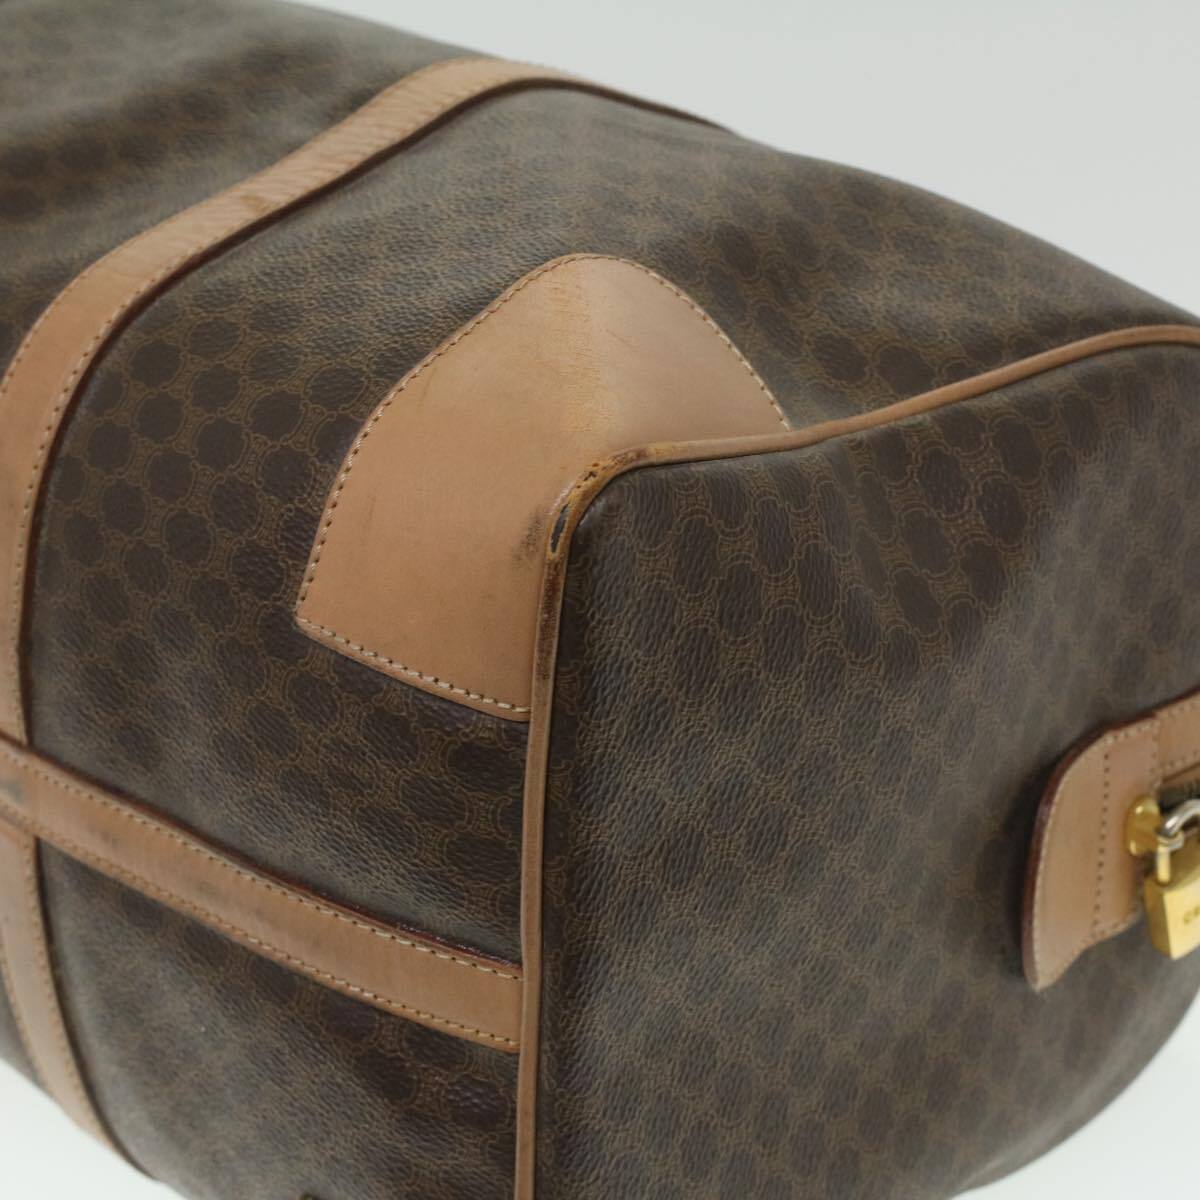 Sold out-Celine Vintage macadam tote bag Free Shipping Worldwide✈️ ✉️  info@amorevintagetokyo.com #ヴィンテージ #セリー... | Instagram